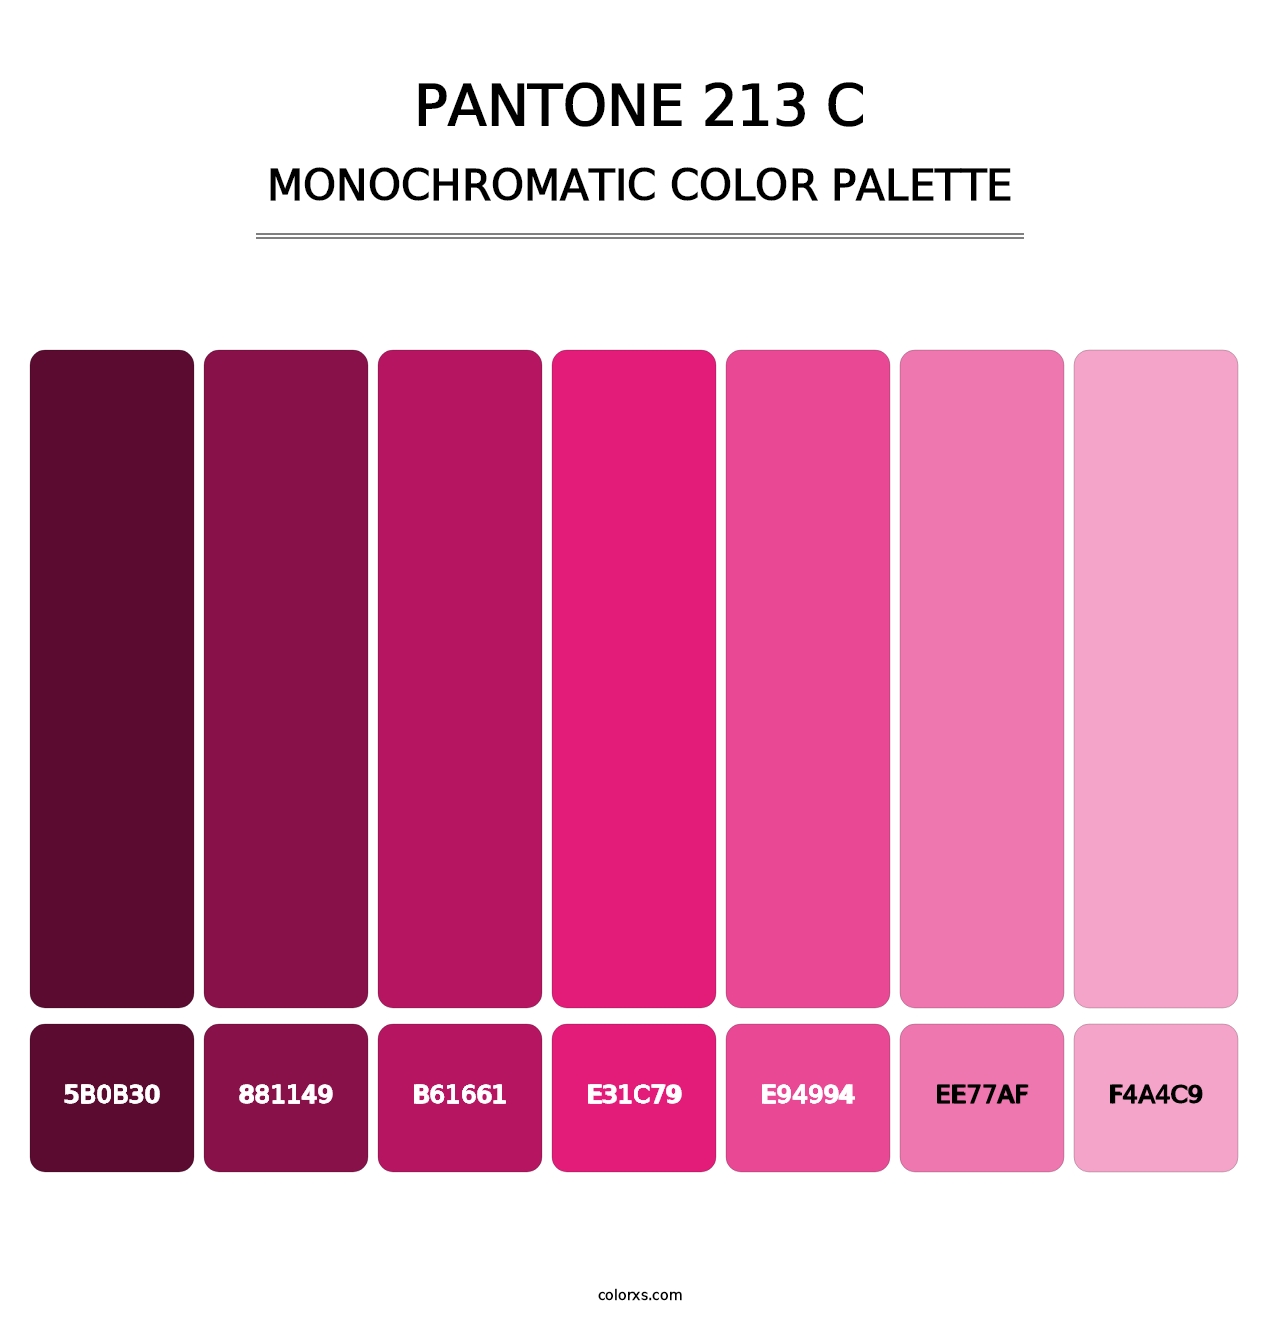 PANTONE 213 C - Monochromatic Color Palette